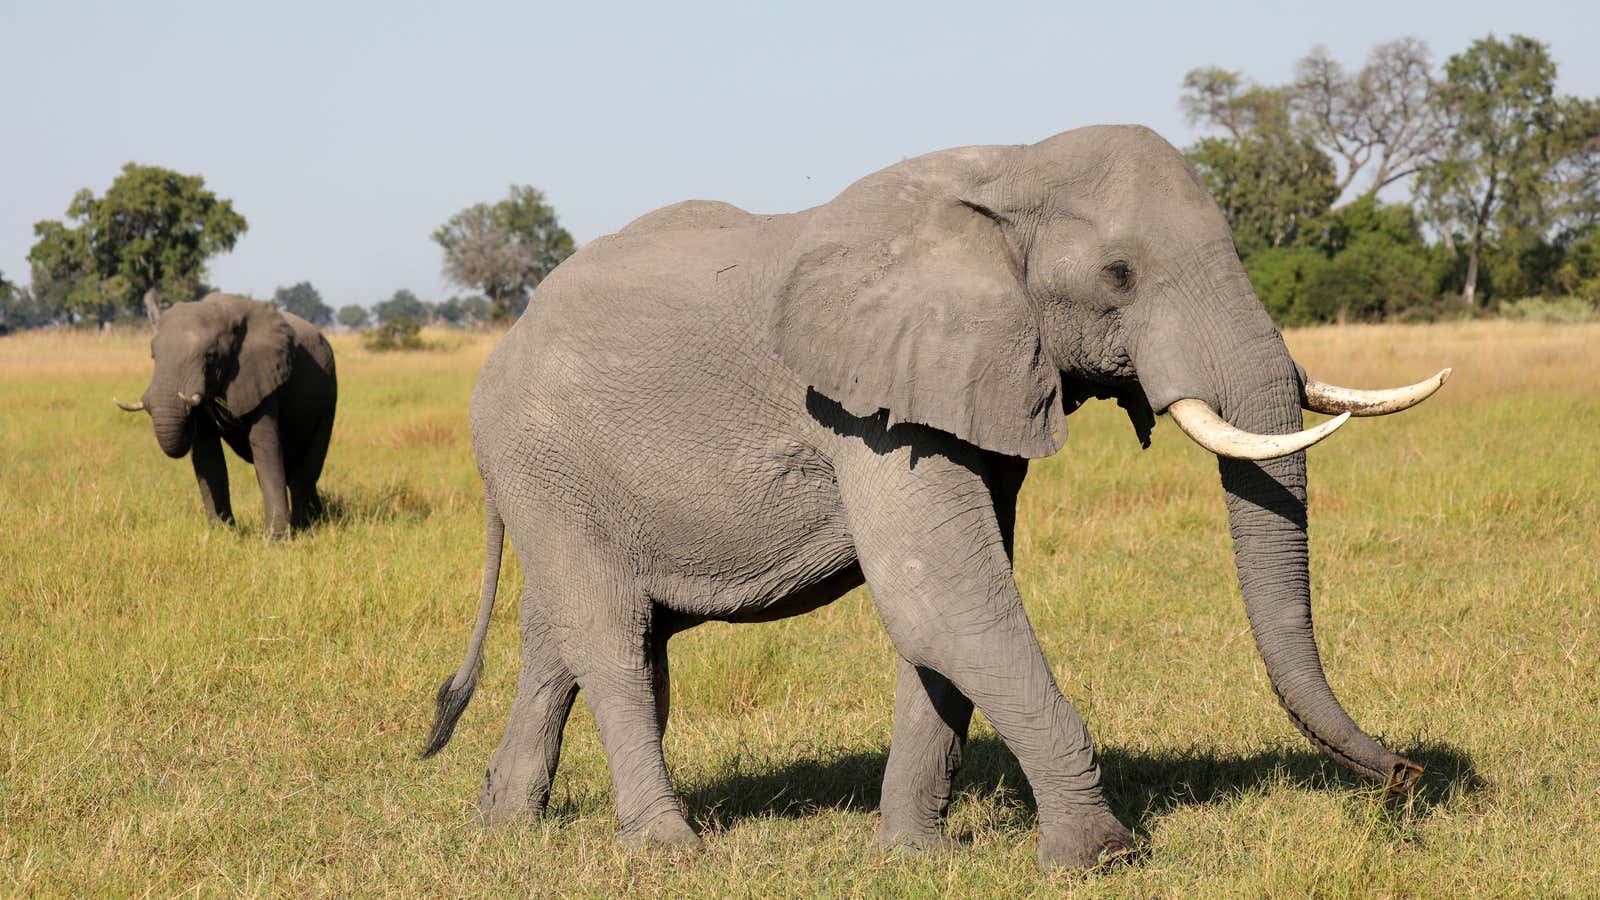 Elephants in the Okavango Delta, Botswana.